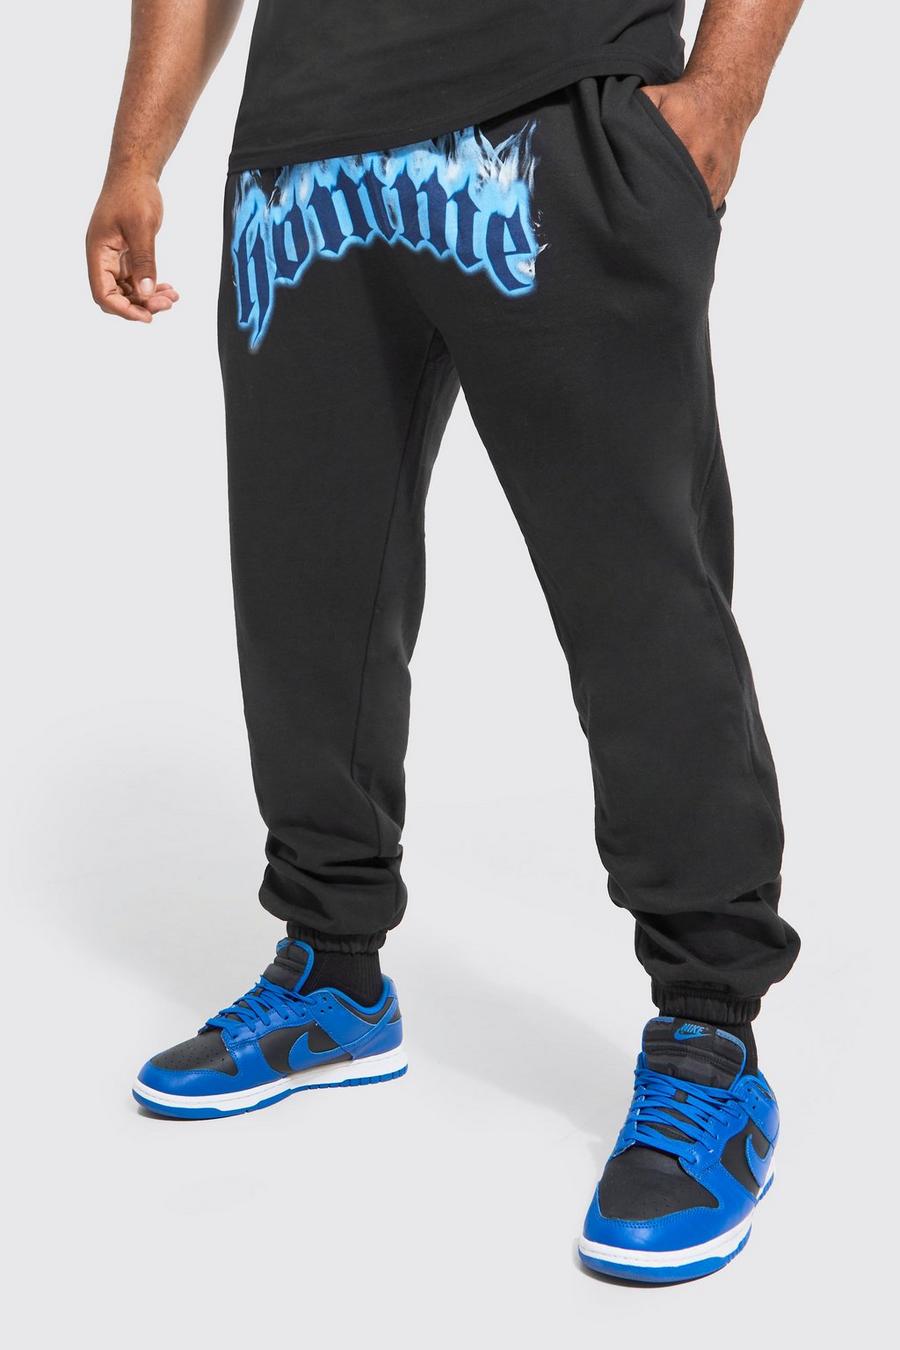 Pantalón deportivo Plus con estampado gráfico Homme de llamas, Black